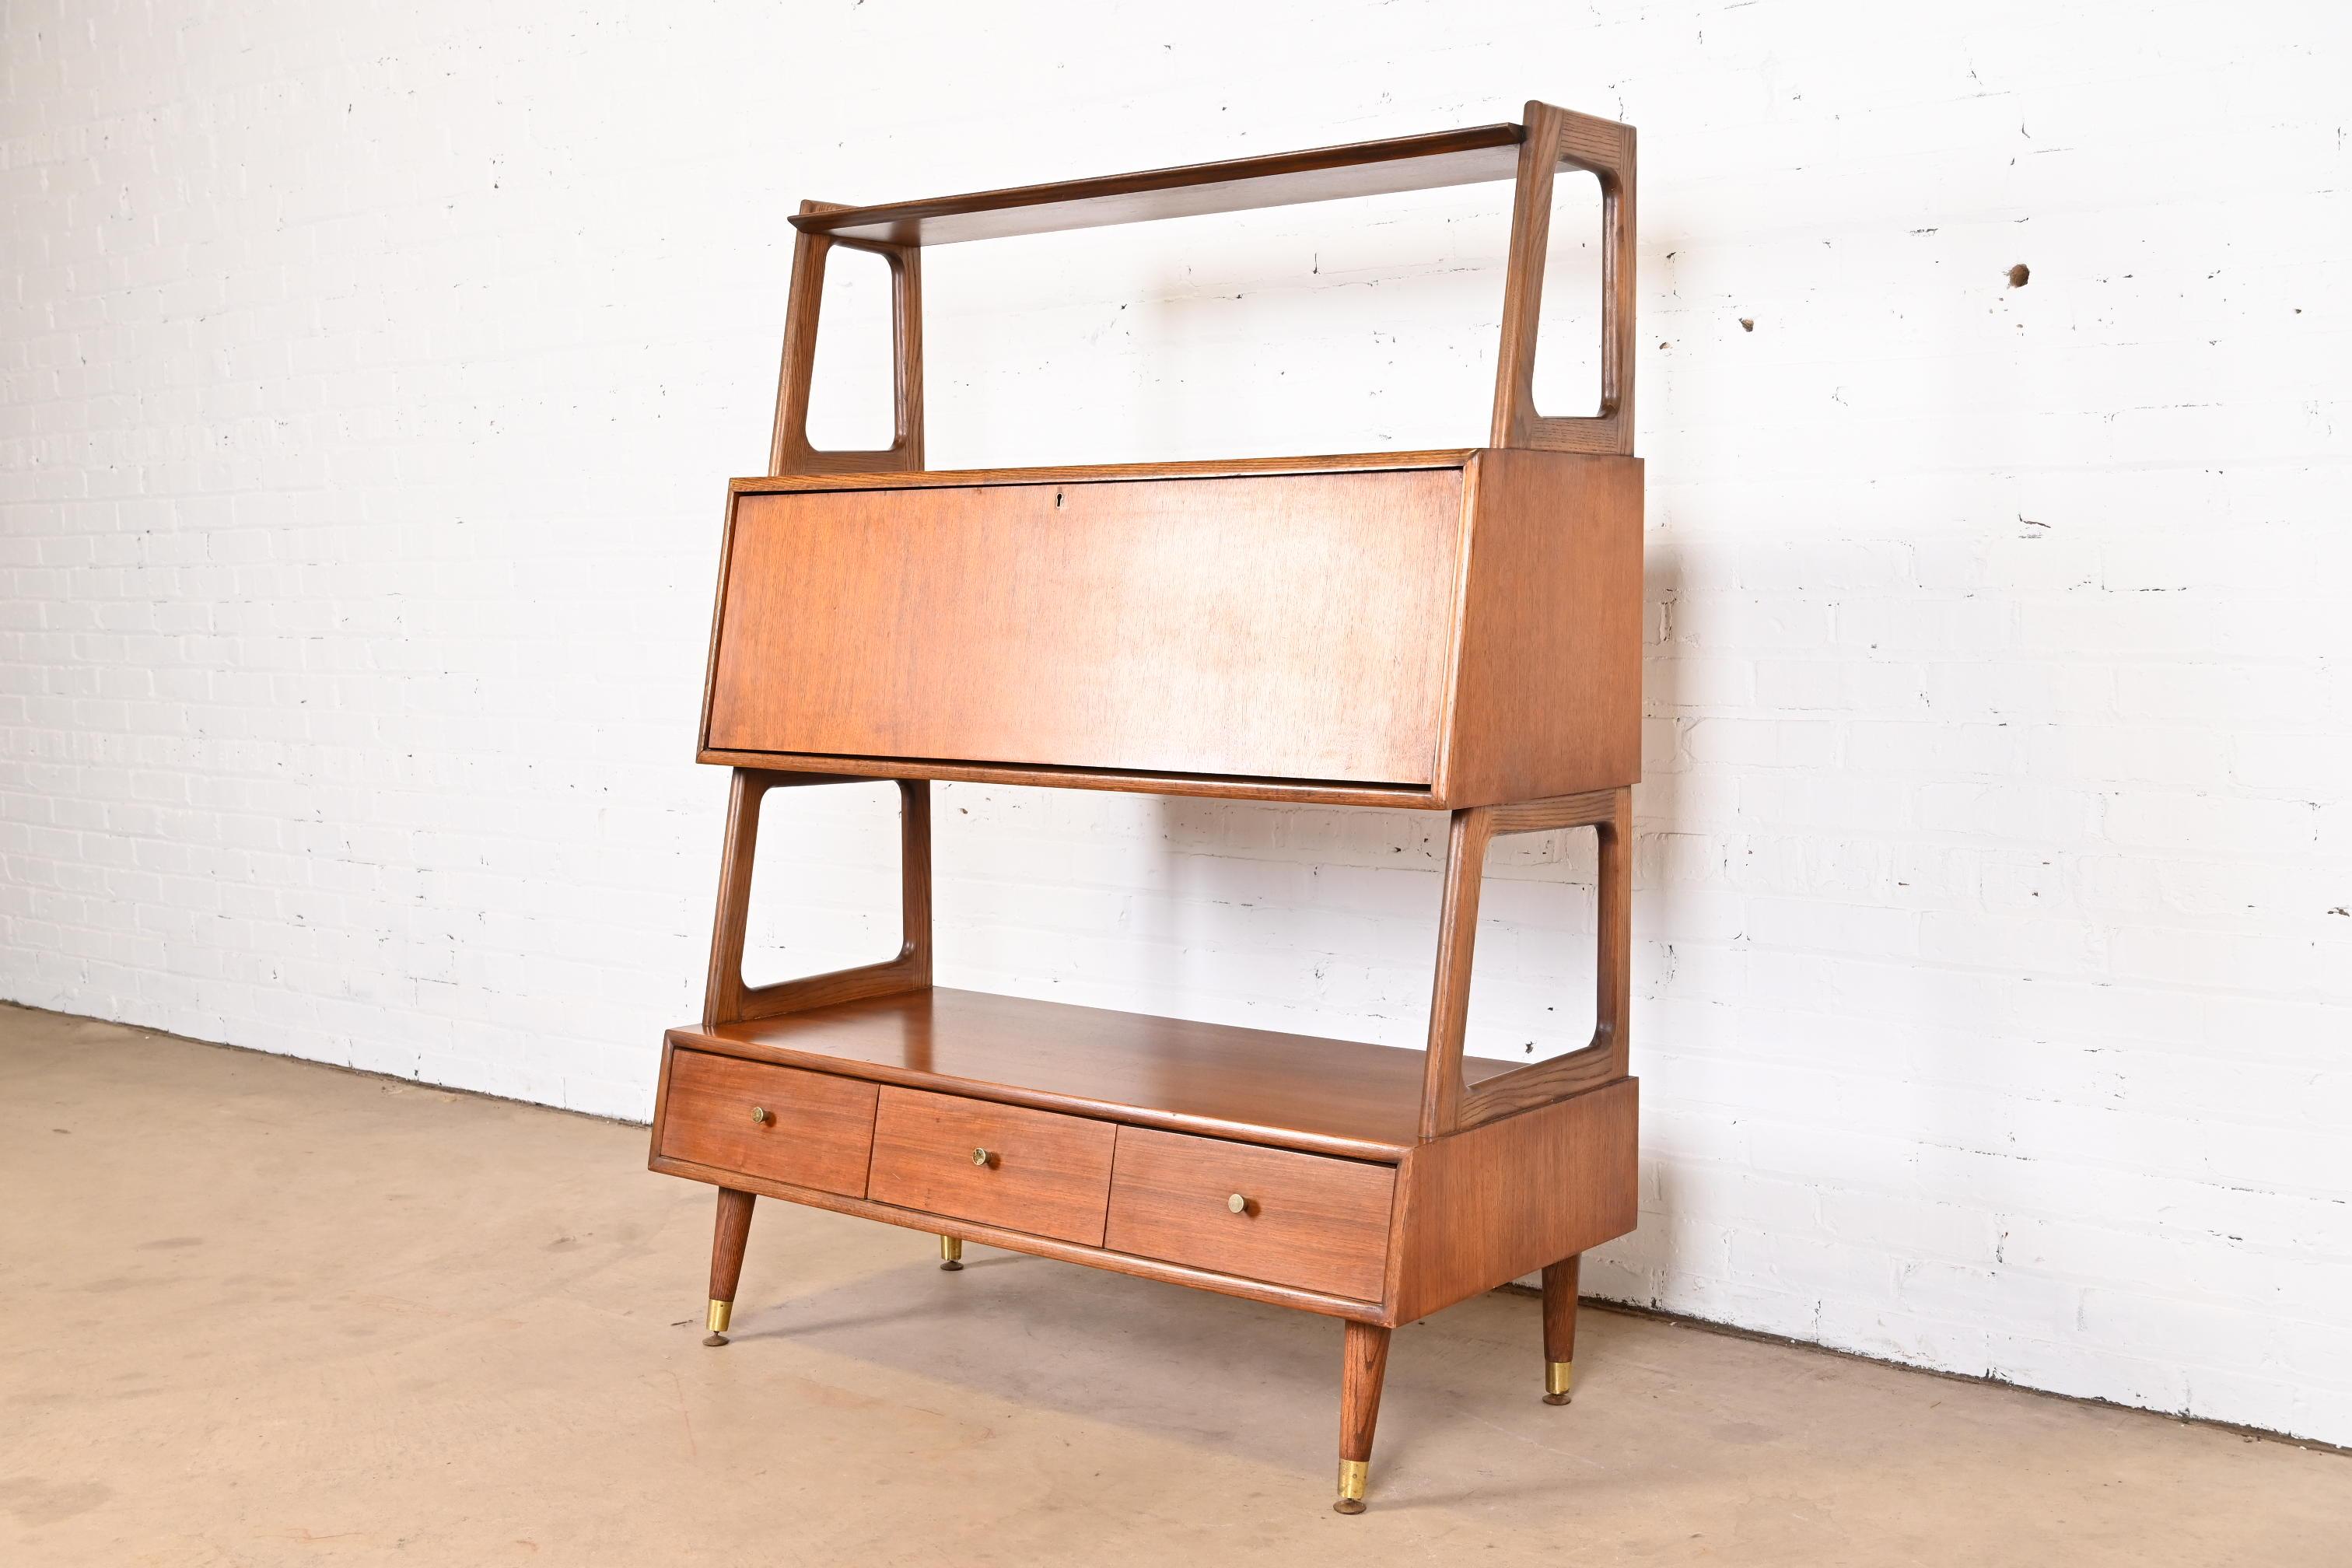 American Mid-Century Modern Walnut Wall Unit Bookcase with Secretary Desk by Saginaw